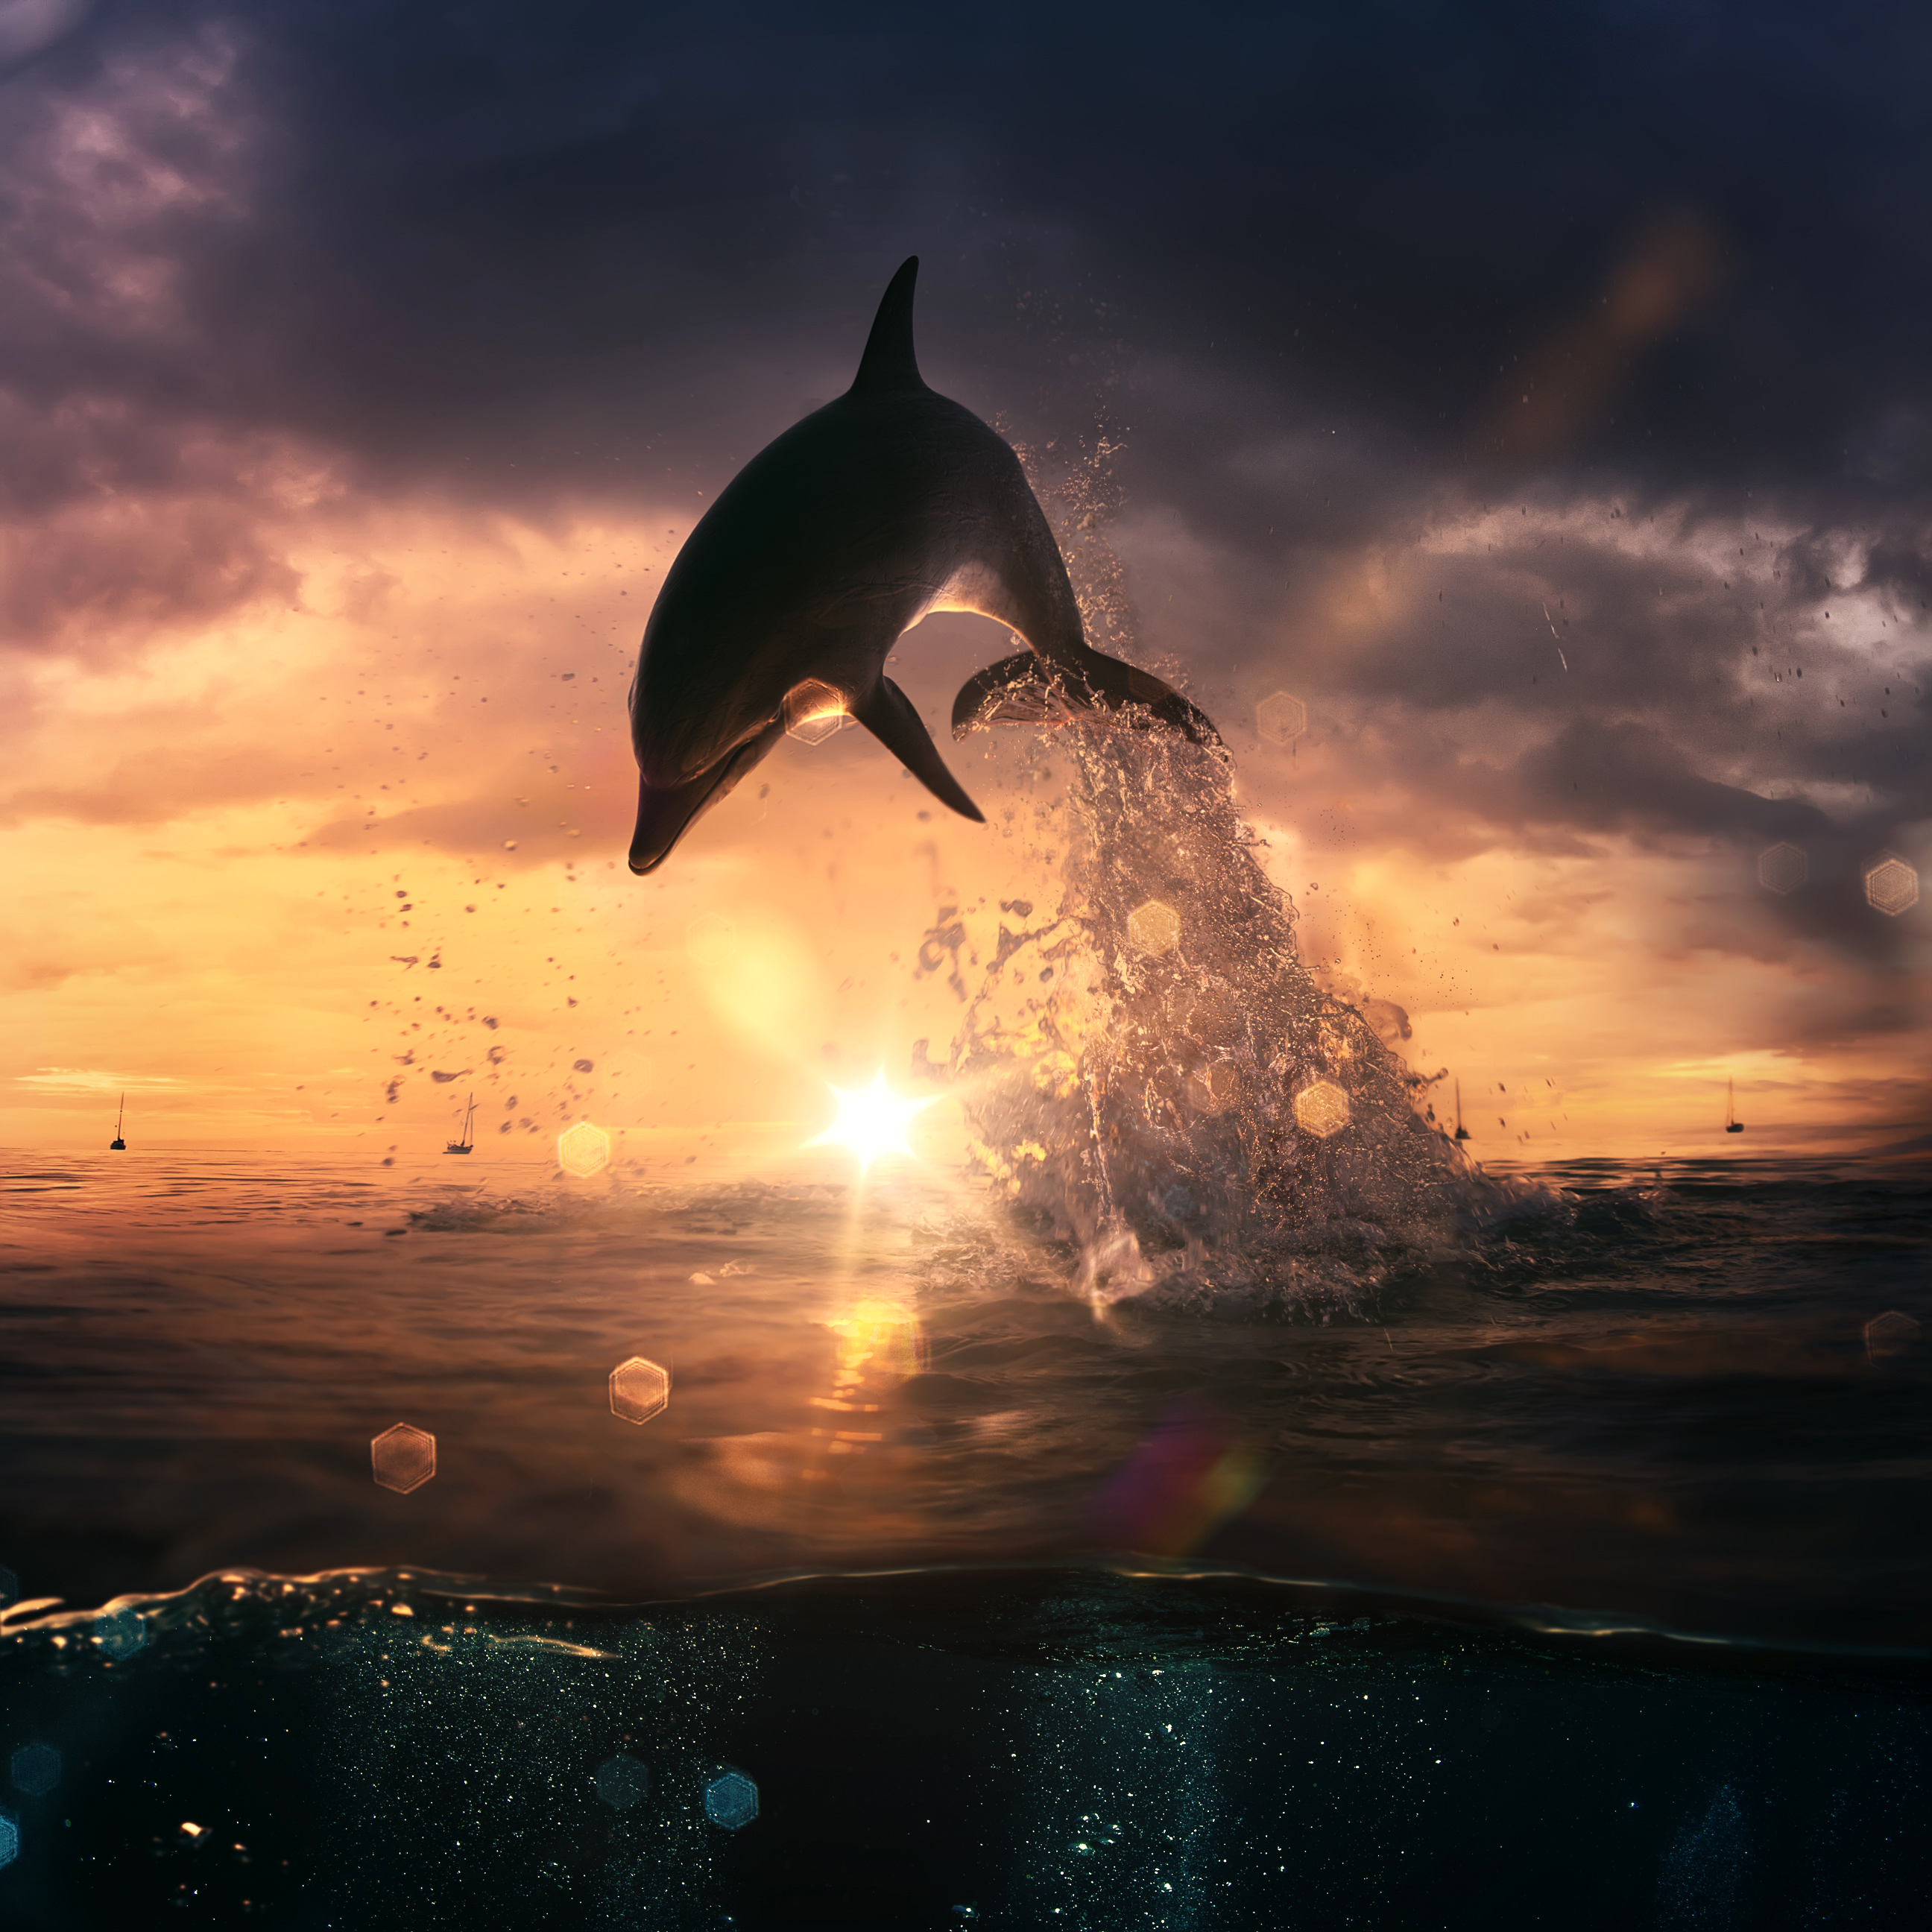 Море закат дельфины